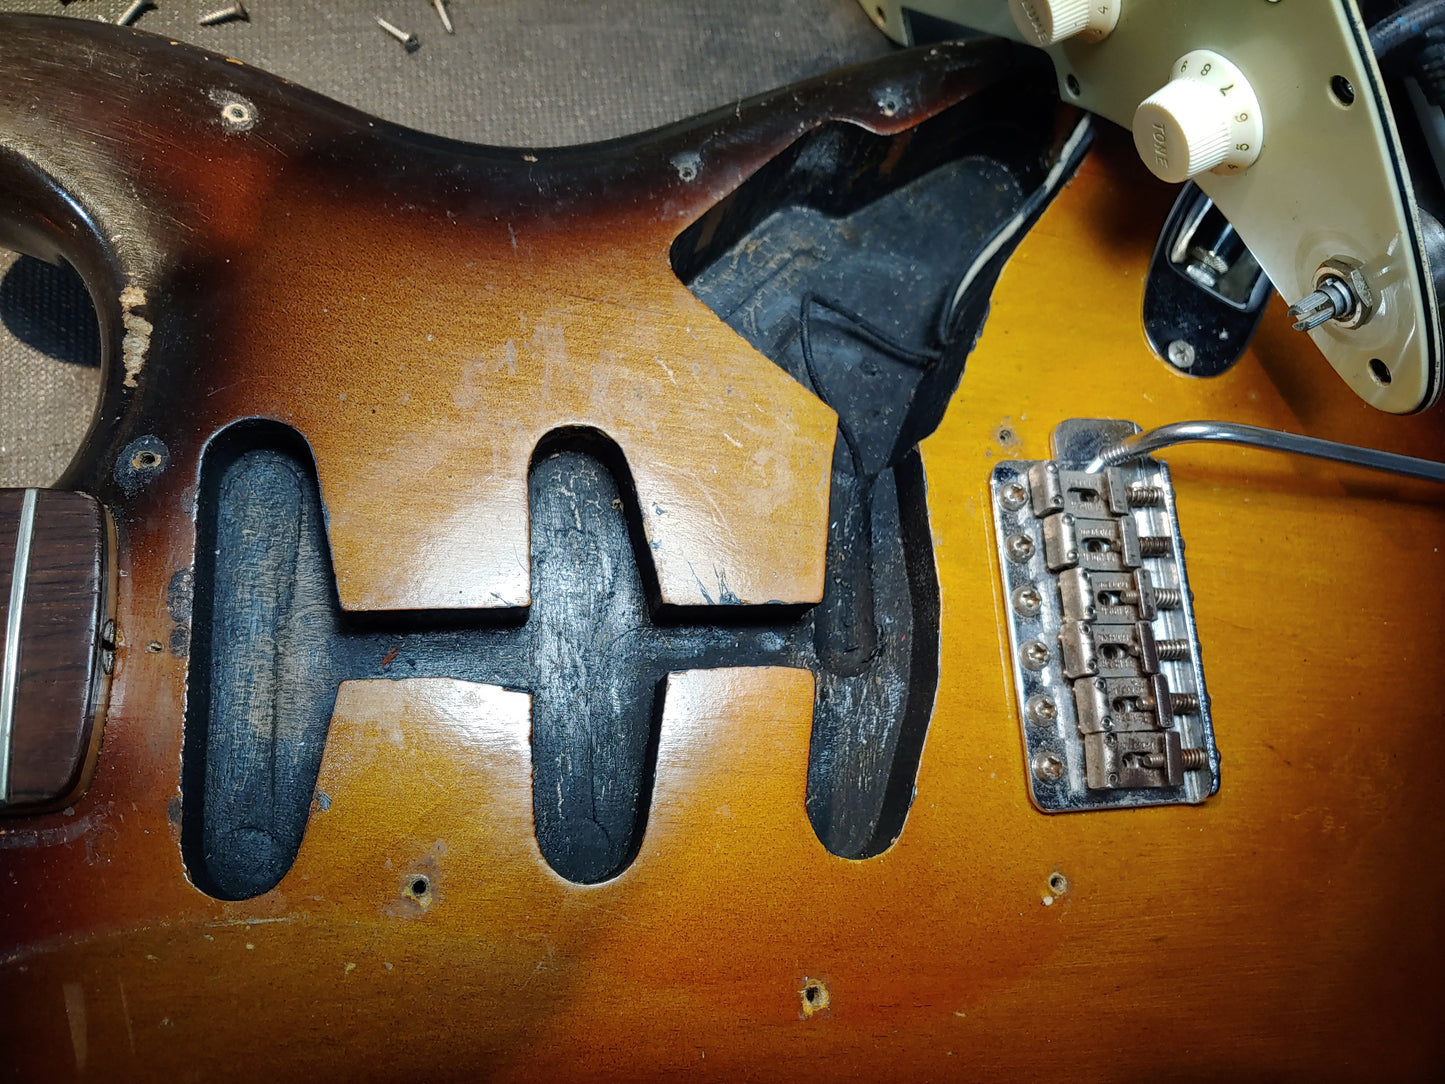 1959 Fender Stratocaster